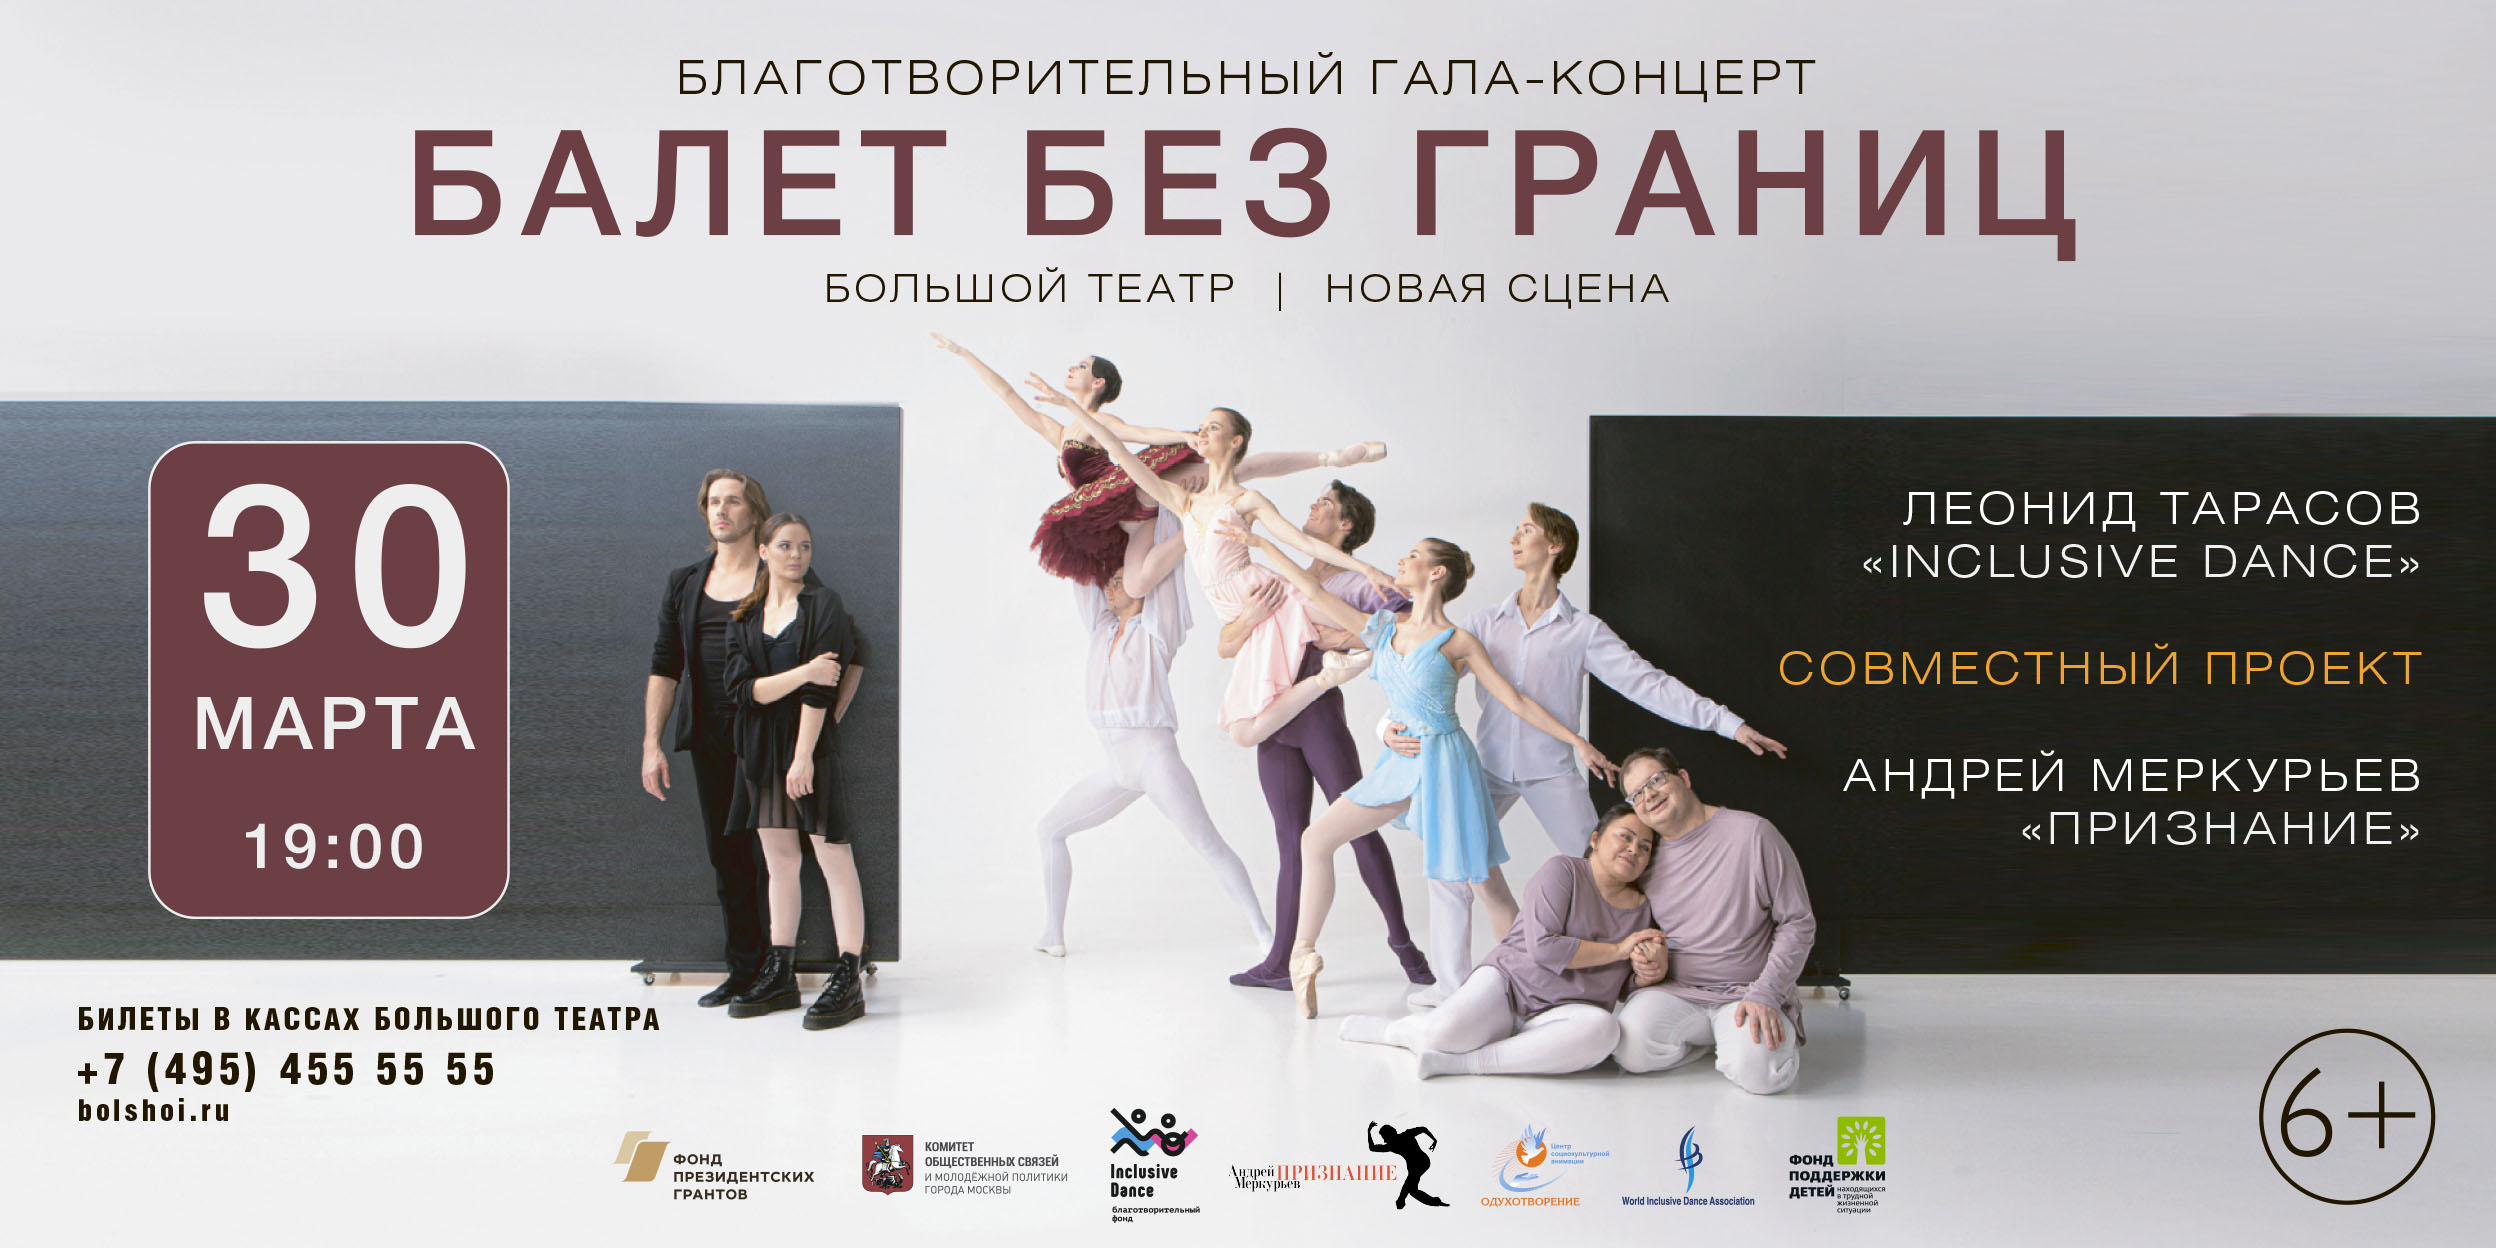 Впервые Inclusive Dance на сцене Большого театра России!